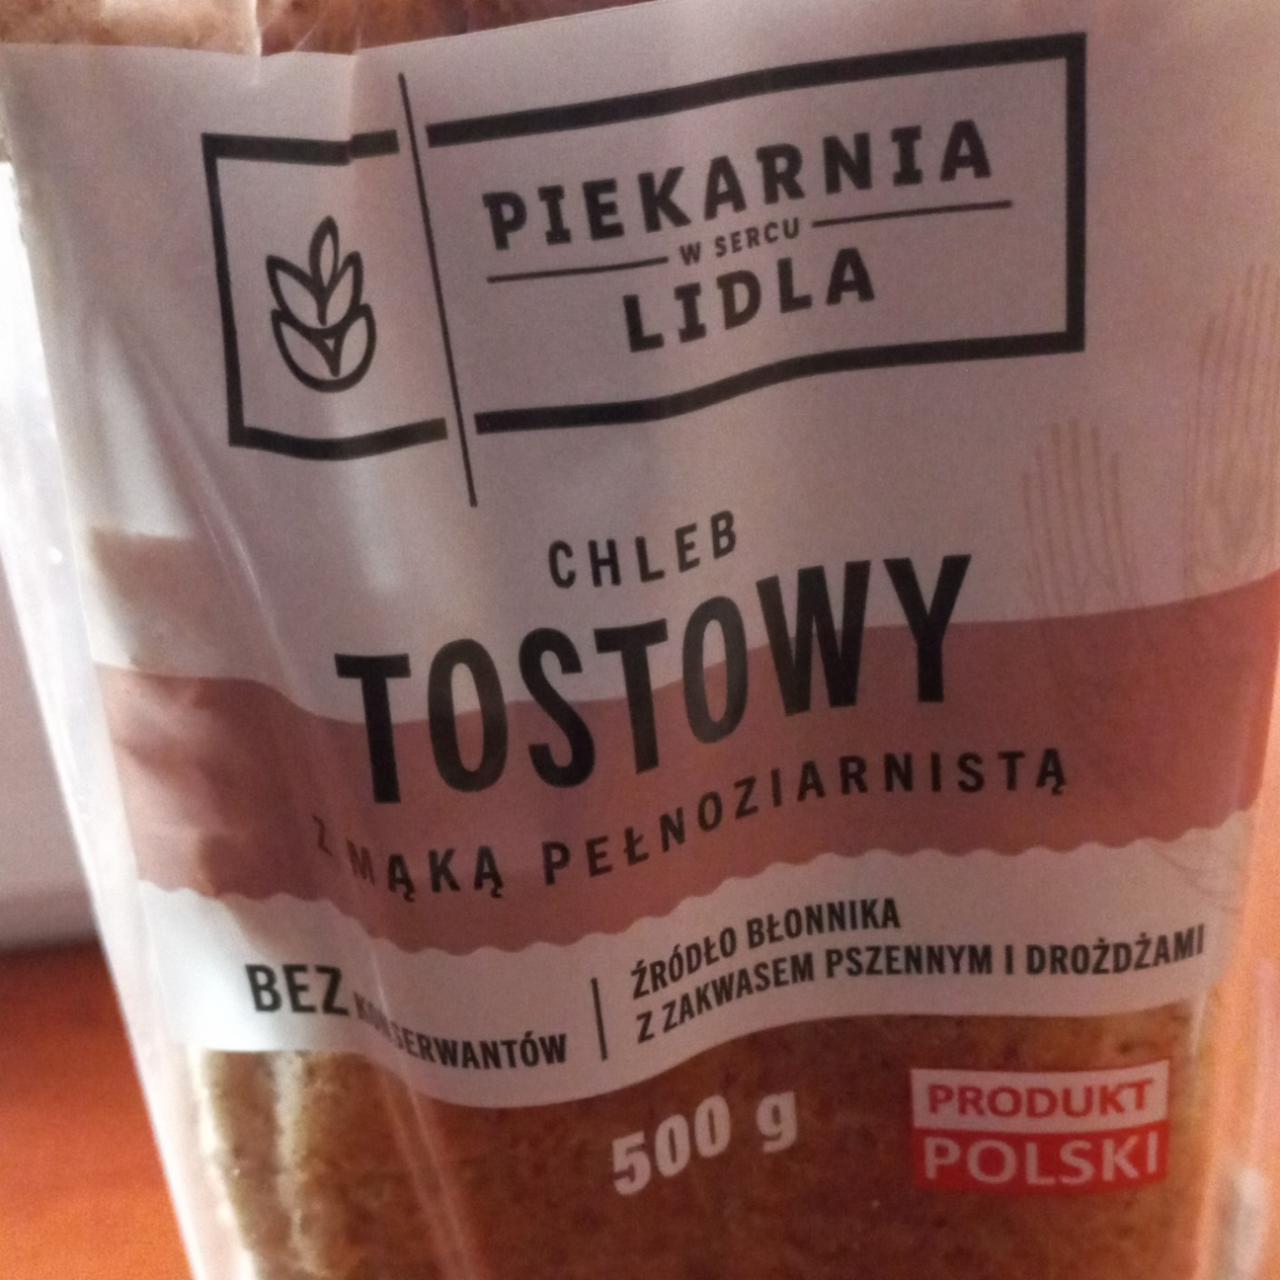 Фото - Хлеб тостовый Piekarnia Lidla